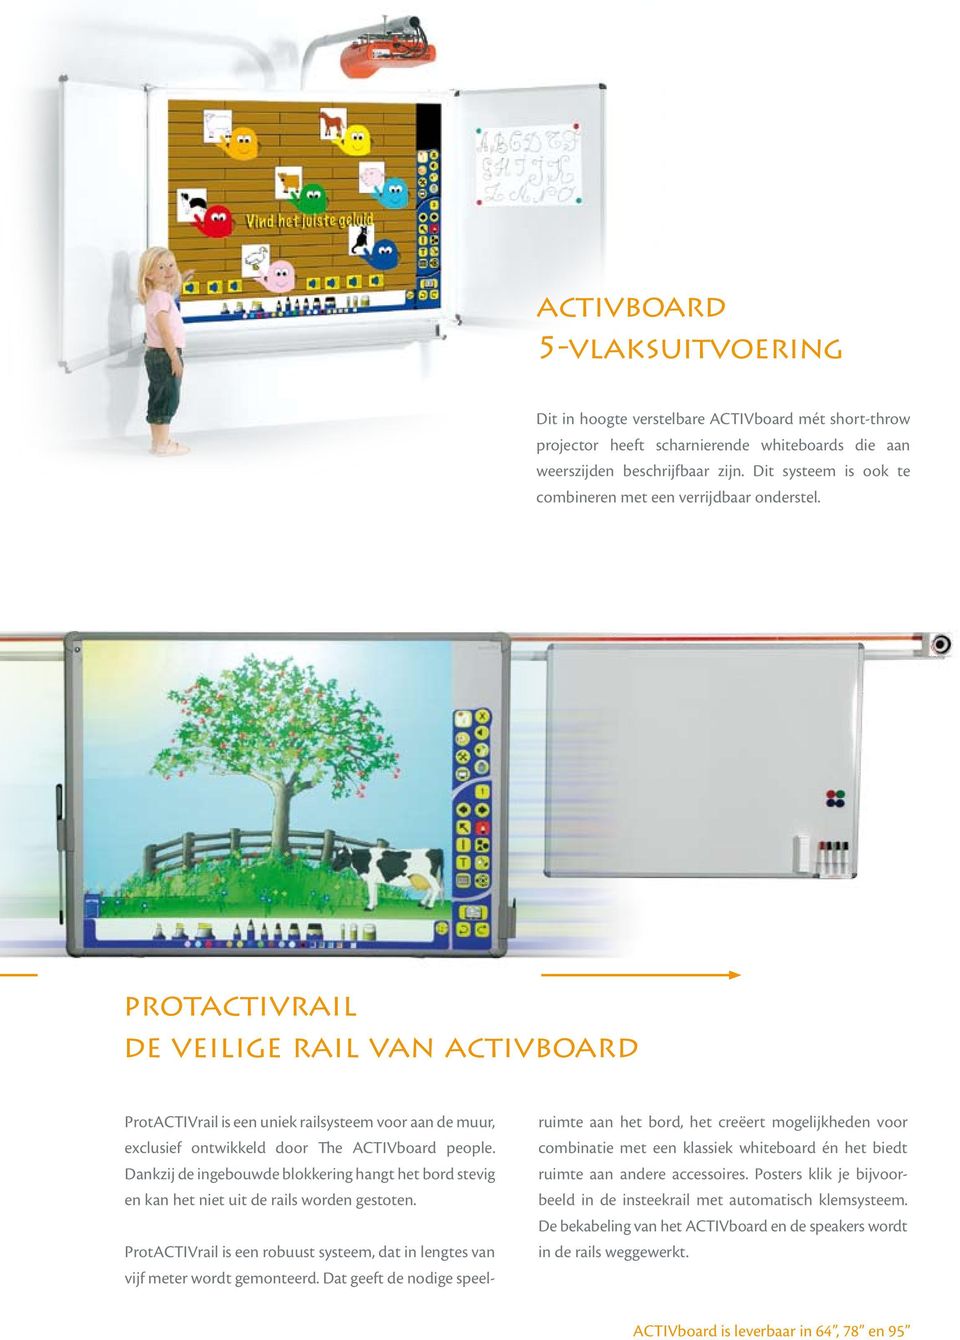 protactivrail de veilige rail van activboard ProtACTIVrail is een uniek railsysteem voor aan de muur, exclusief ontwikkeld door The ACTIVboard people.